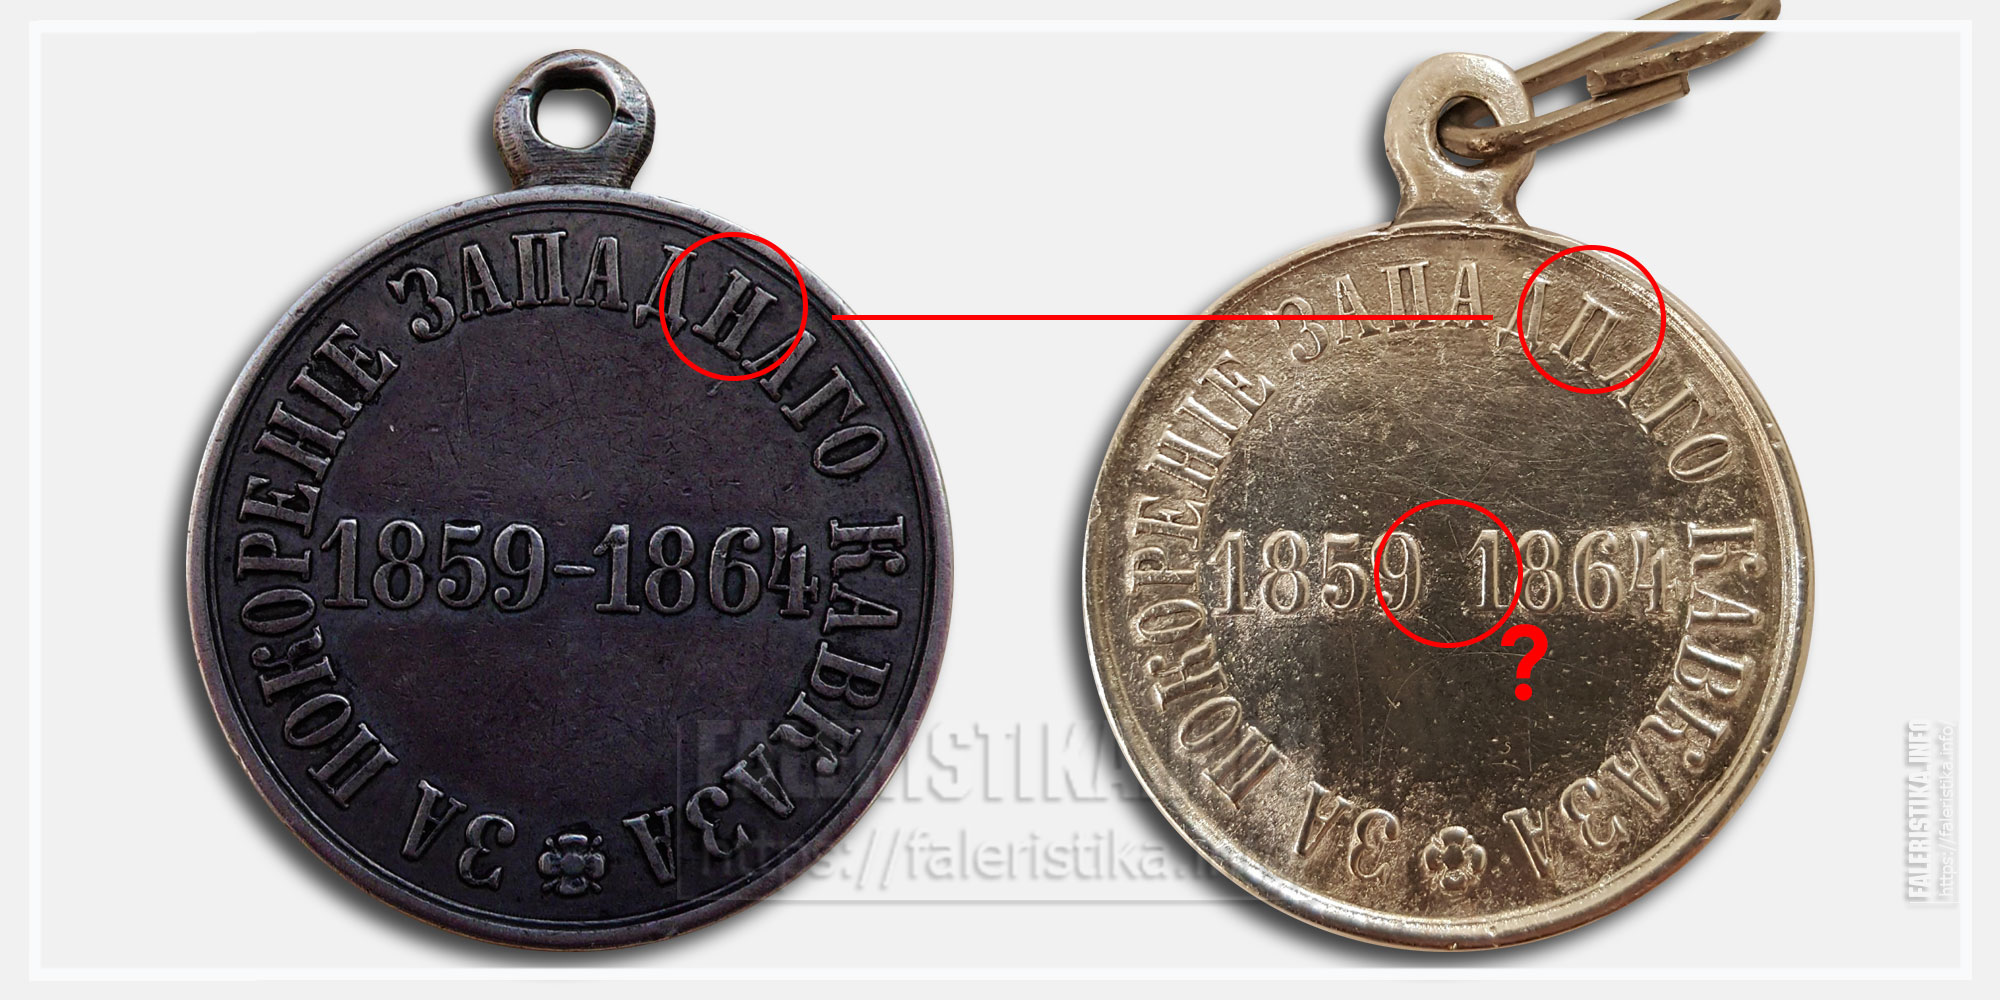 Медаль "За покорение Западного Кавказа 1859-1864" Характерные собенности: "ЗАПАДПАГО" и отсутствие тире